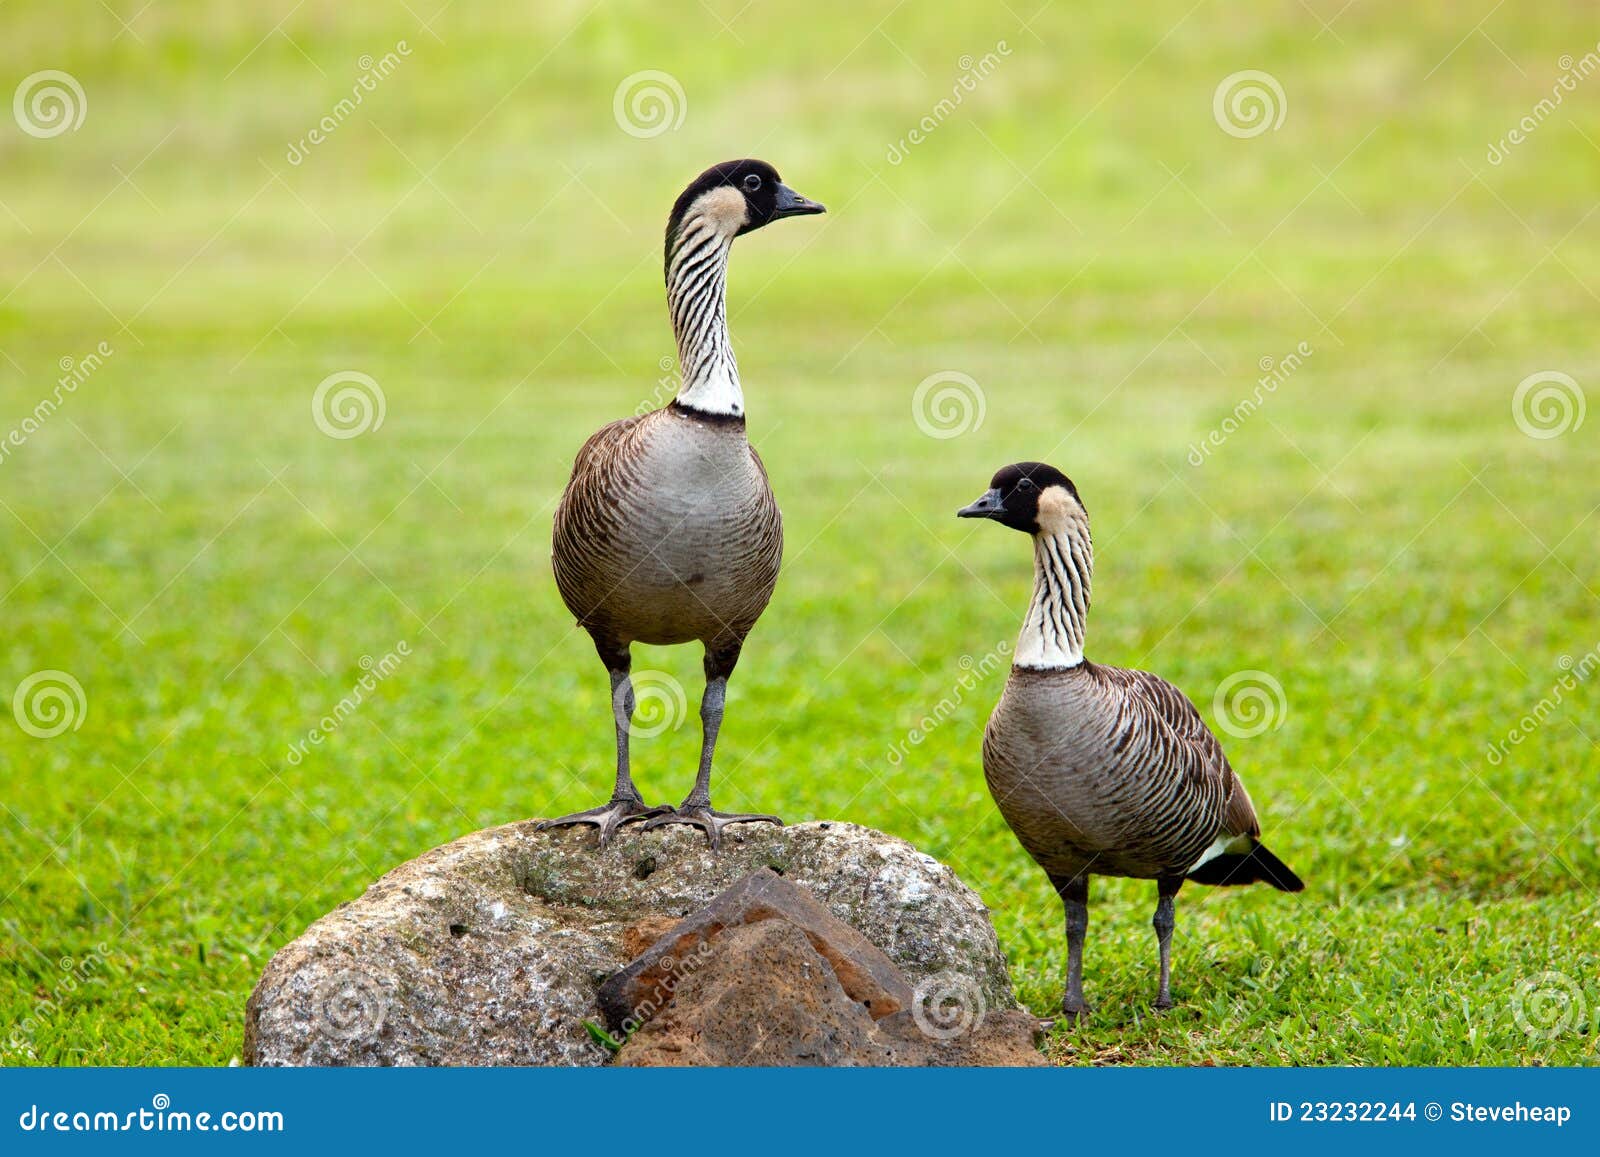 pair of nene geese